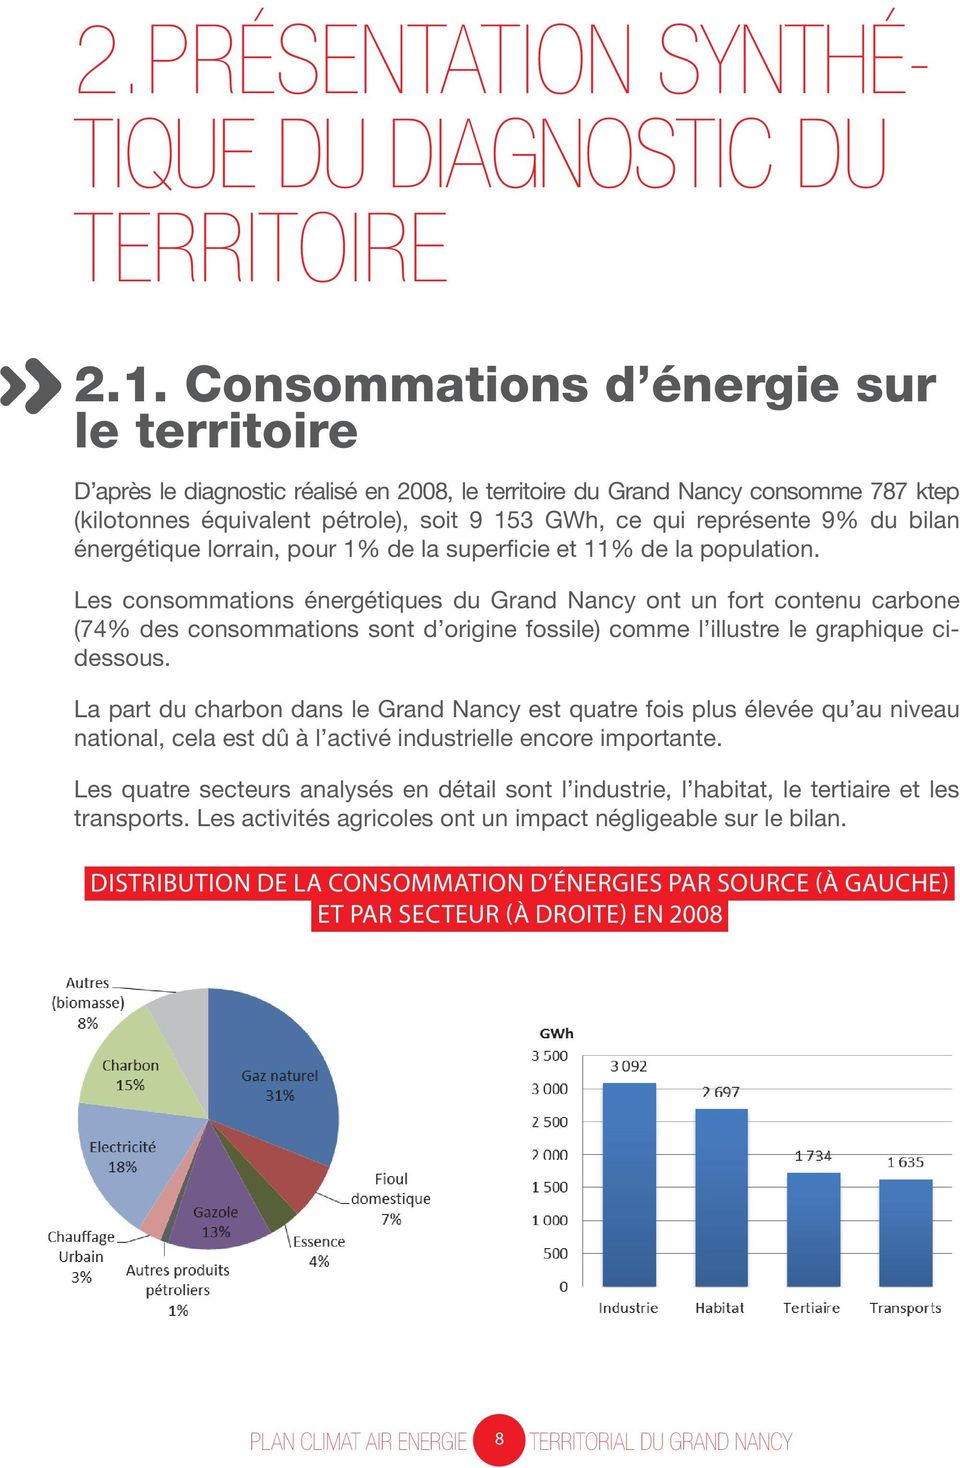 représente 9% du bilan 2.1. énergétique Consommations lorrain, pour 1% de la d énergie superficie et sur 11% le de territoire la population.